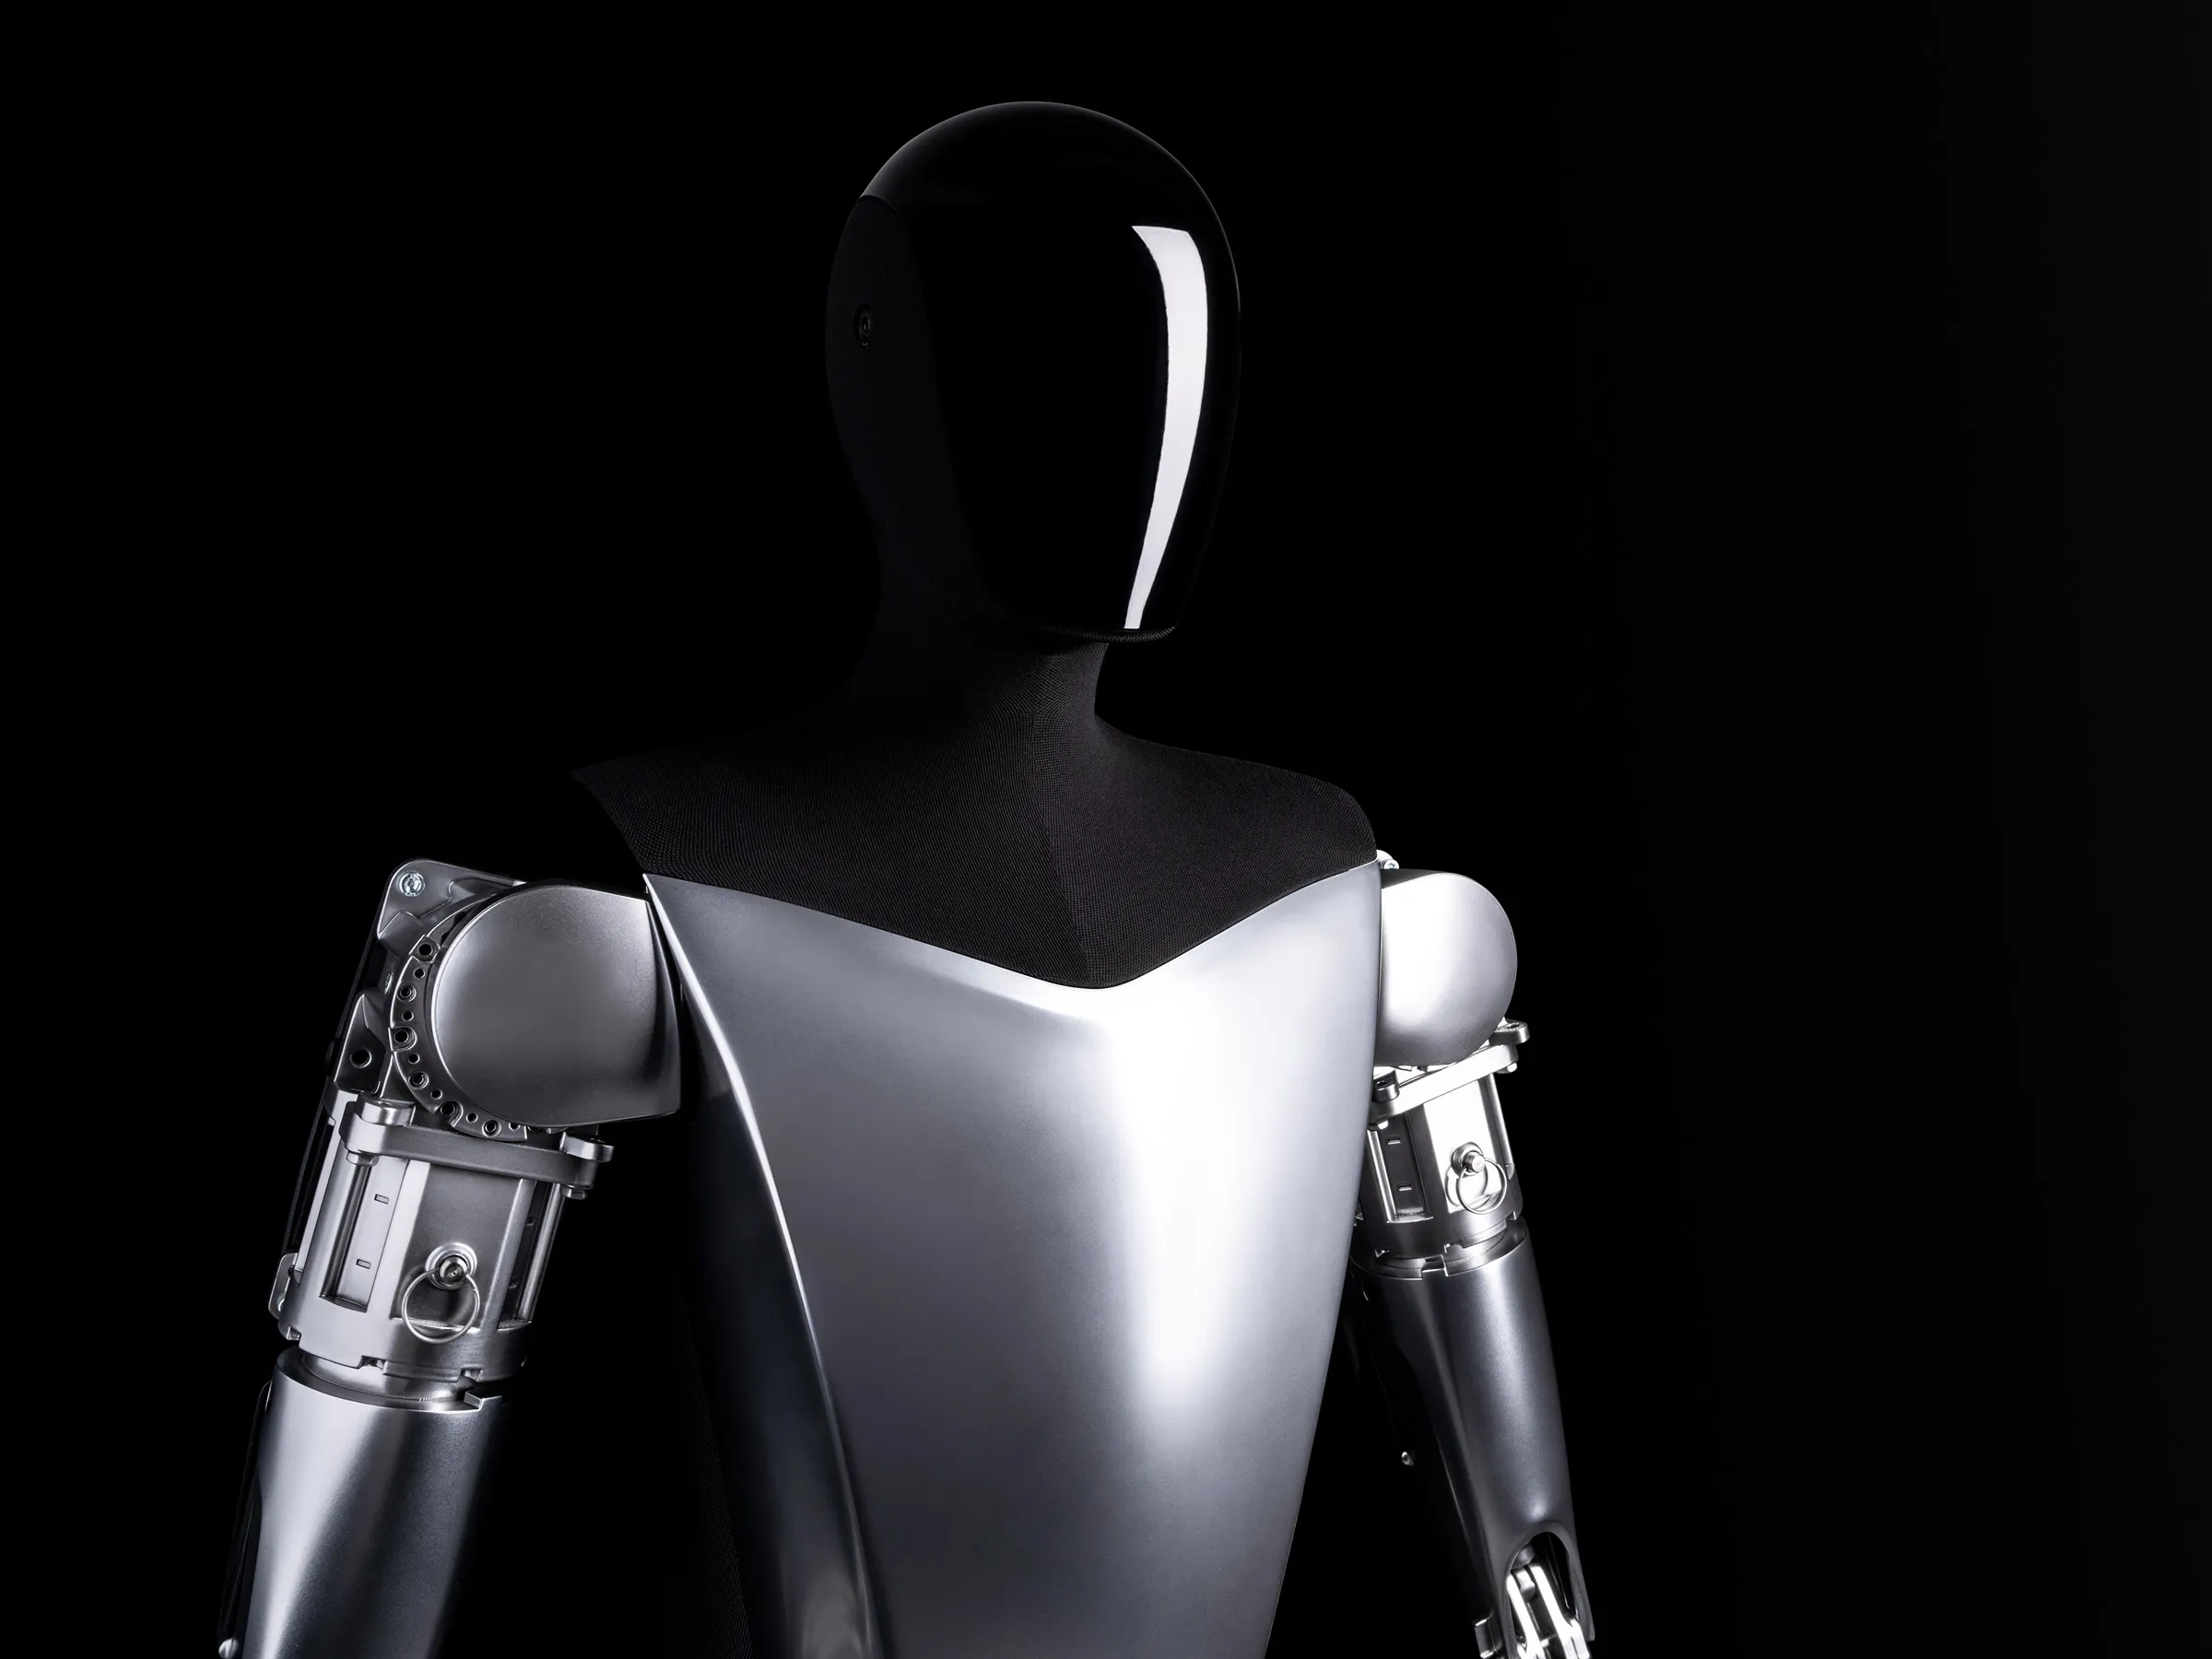 Il mercato dei robot umanoidi come Tesla Optimus crescerà fino a 152 miliardi di dollari entro il 2035 - Goldman Sachs